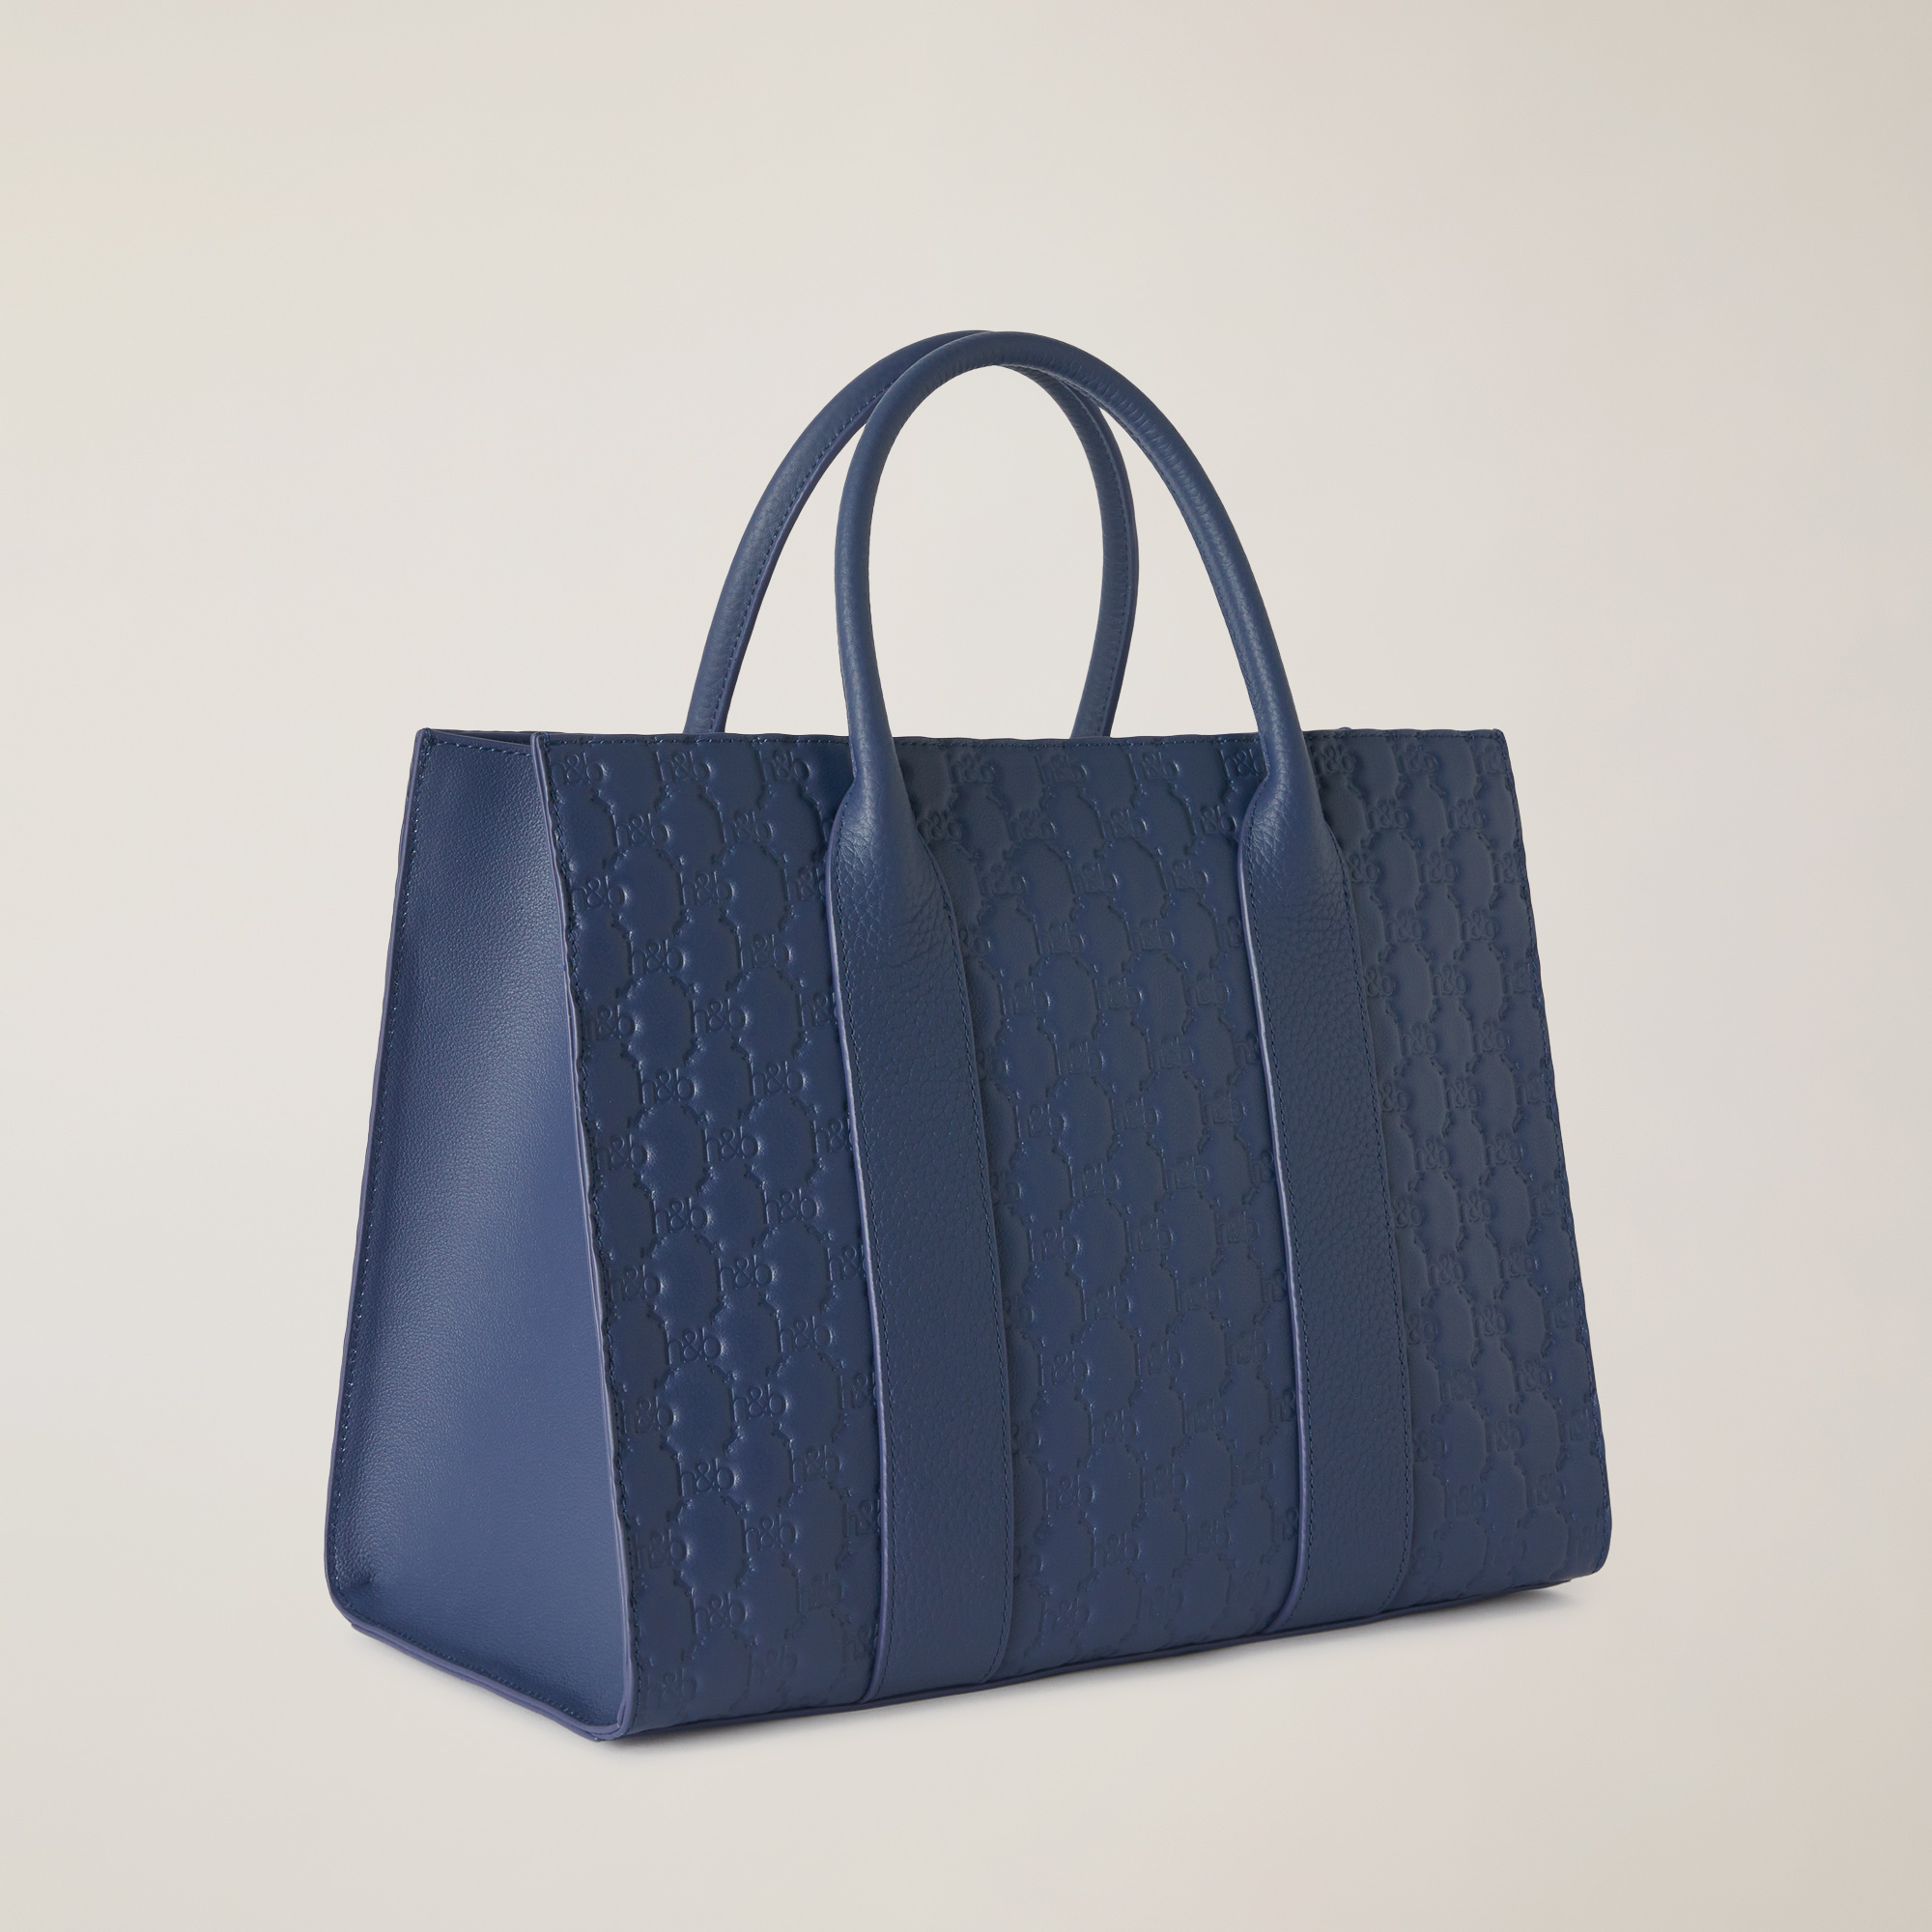 Handbag with Monogram, Blue, large image number 1